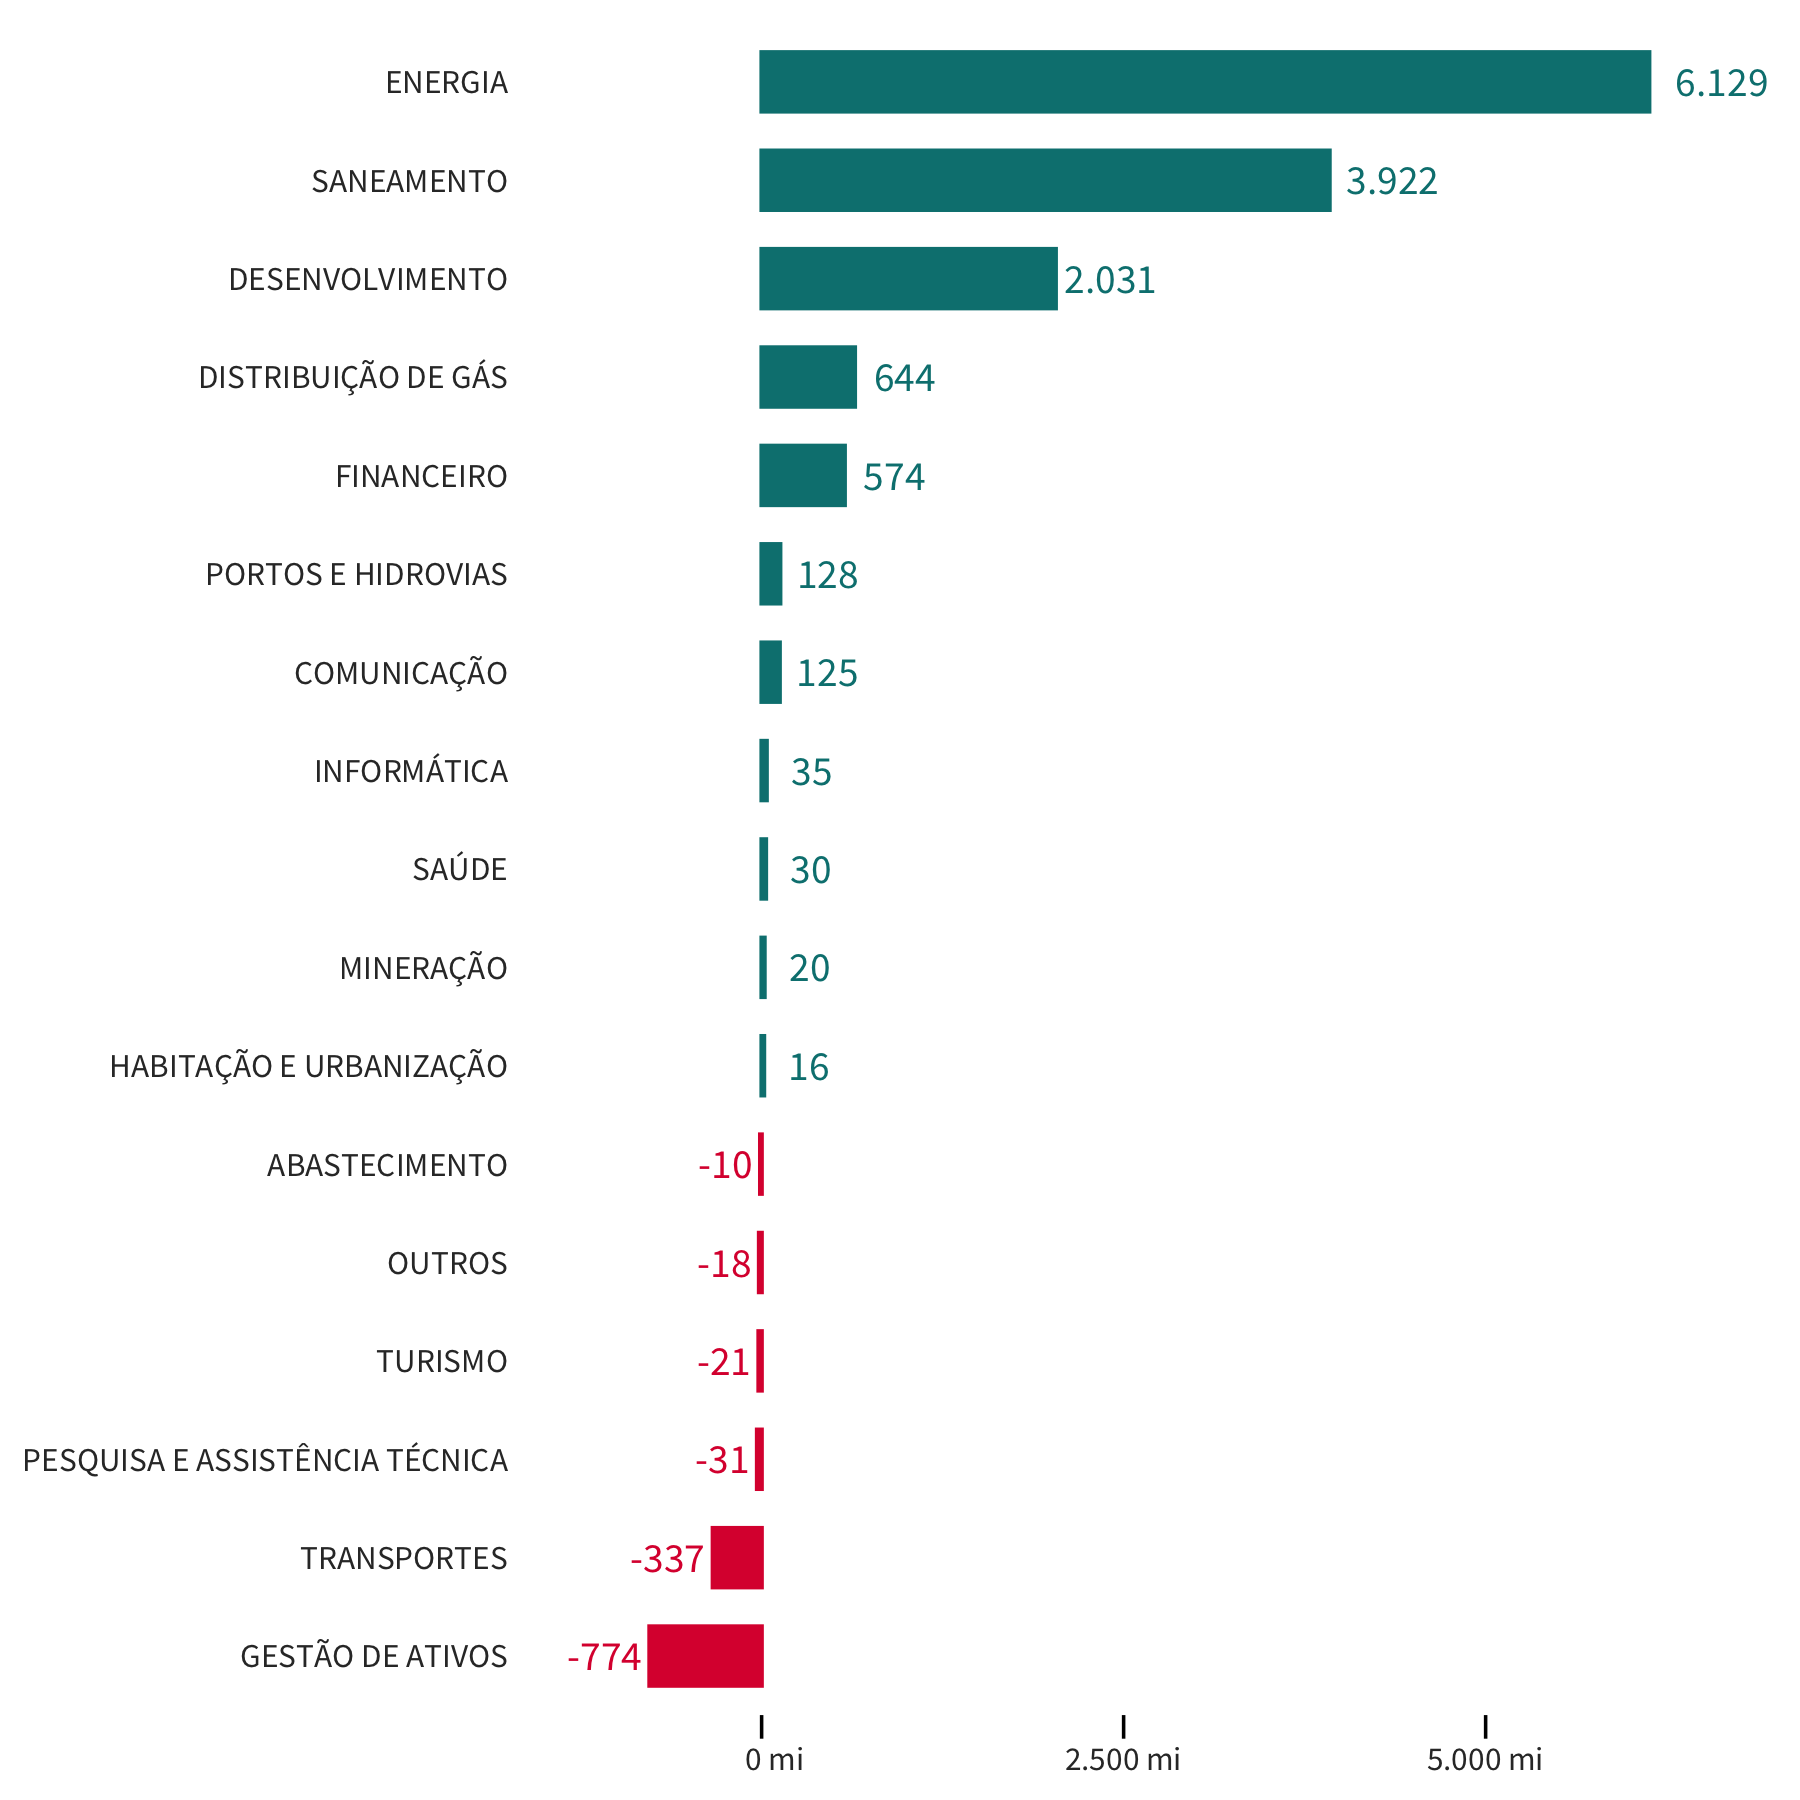 Gráfico de barras com os lucros e prejuízos totais por setor em 2019.